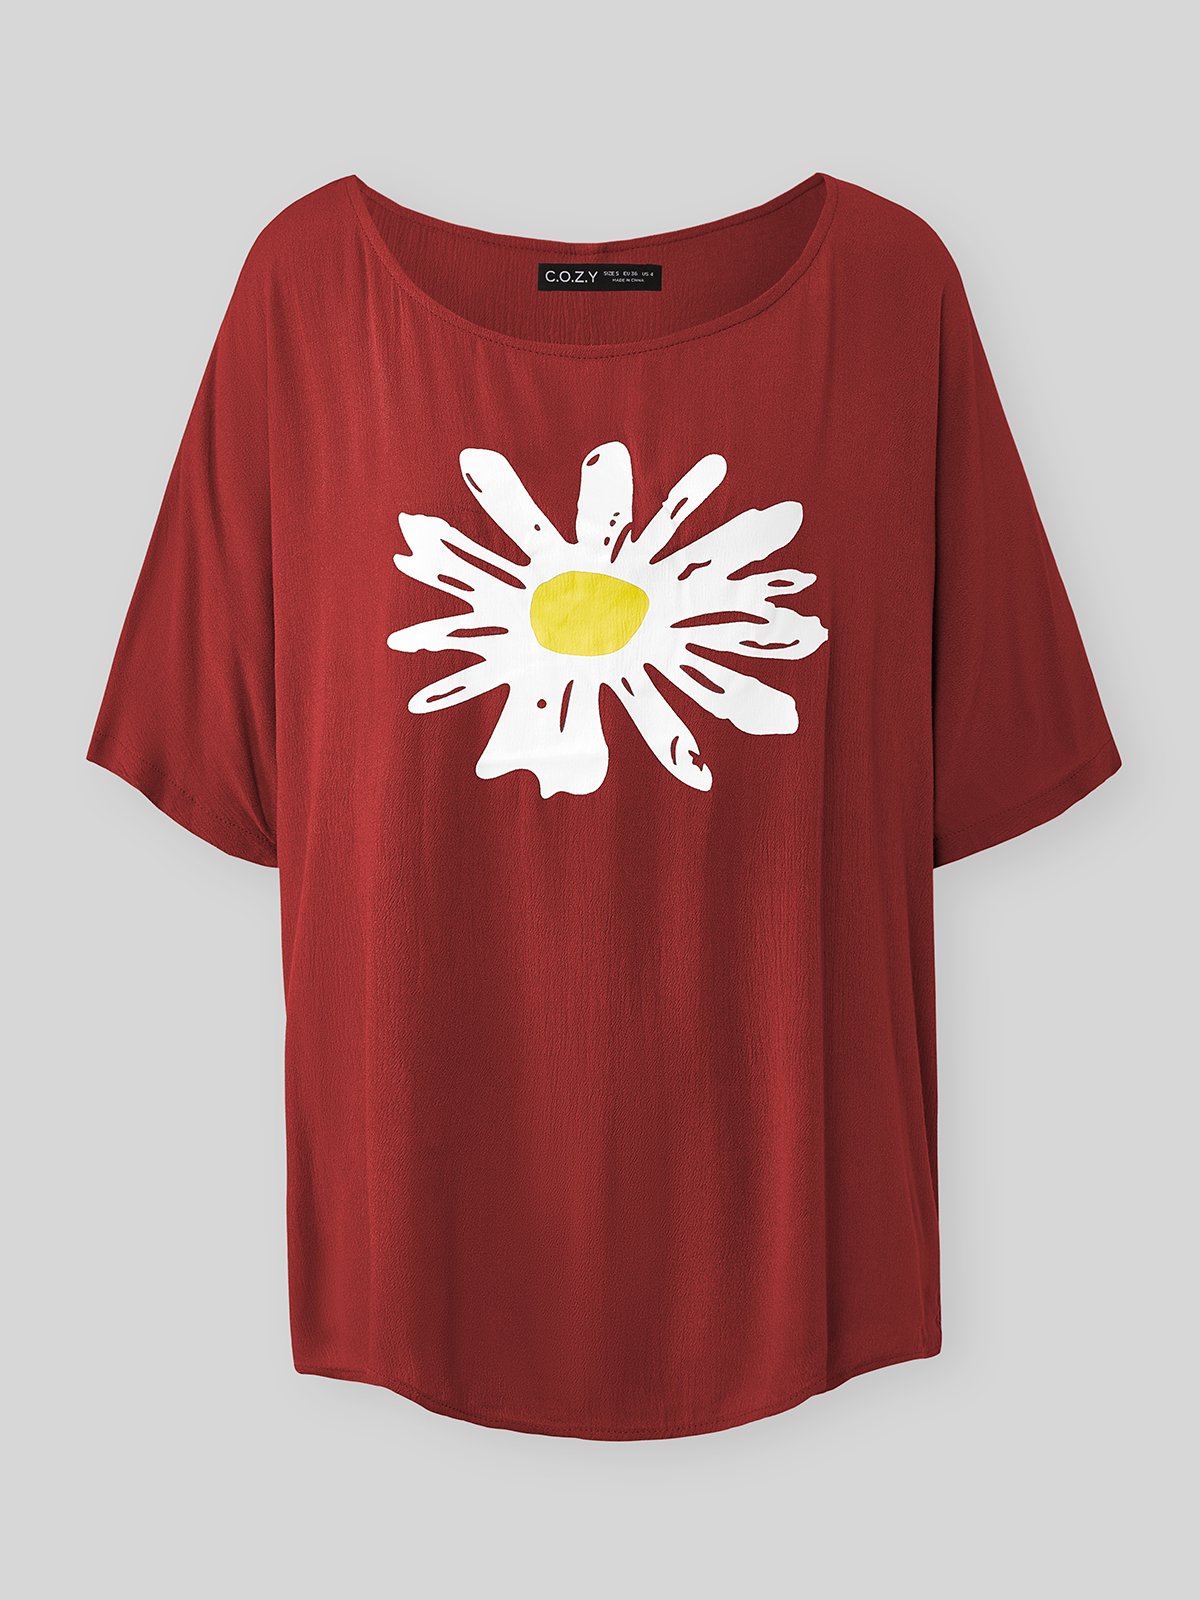 Vintage Cotton Blends Floral T-Shirts